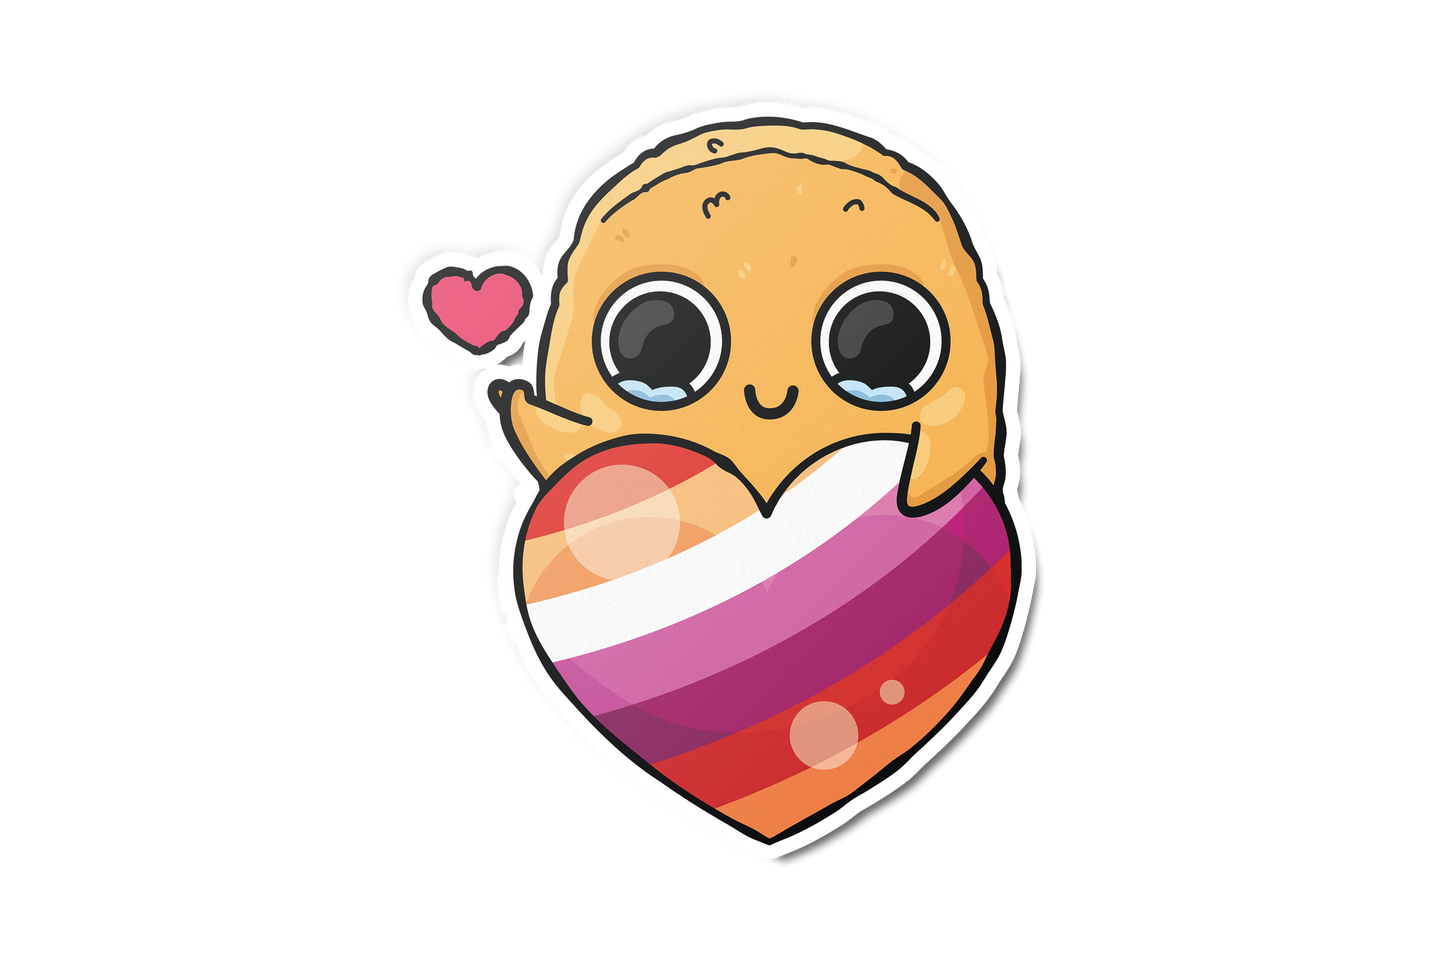 LGBTQ Heart Sad Nuggie Sticker